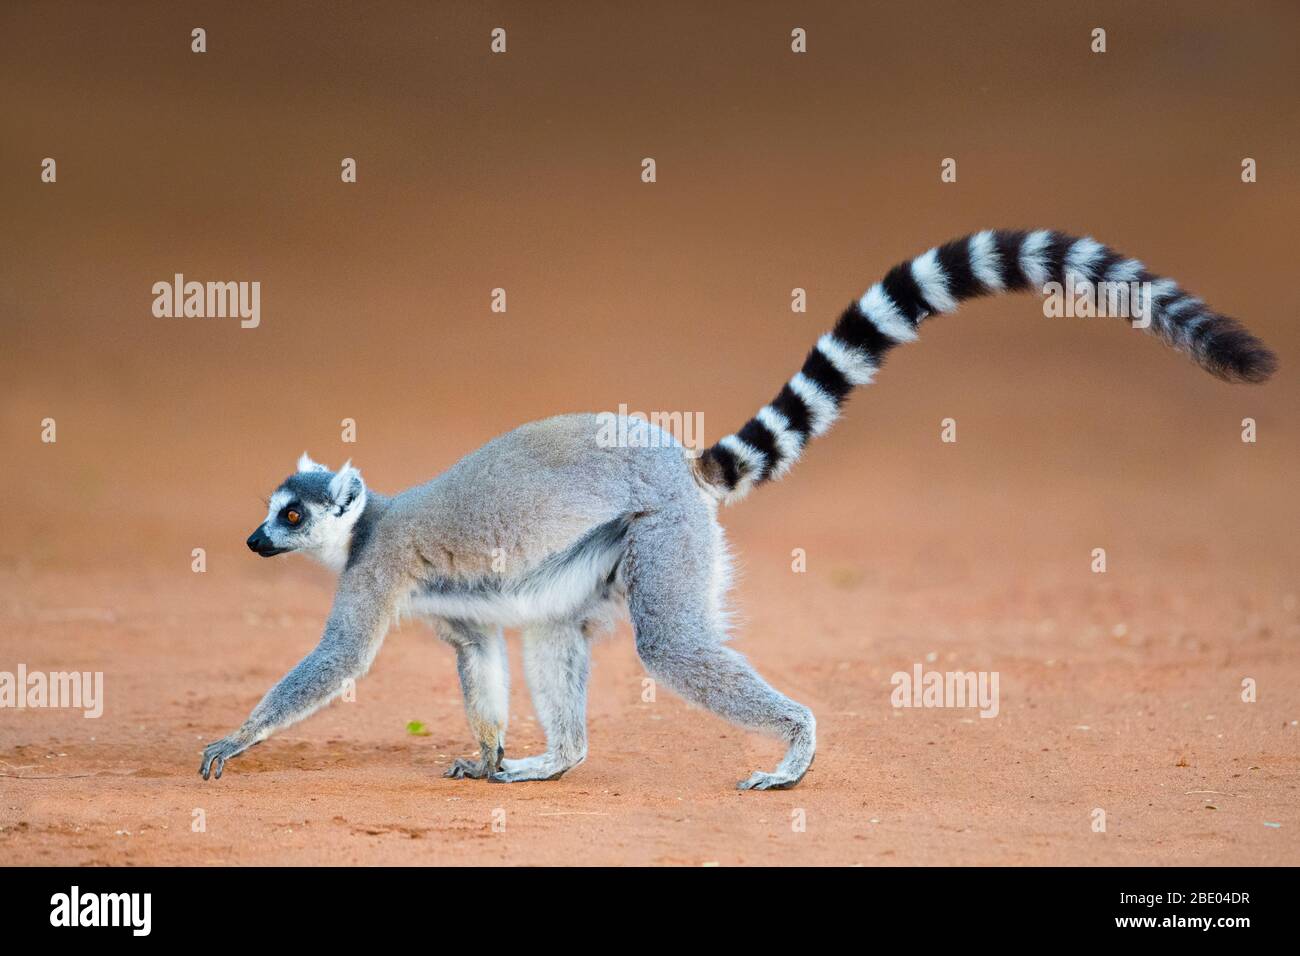 Ring-tailed lemur (Lemur catta), Madagascar Stock Photo